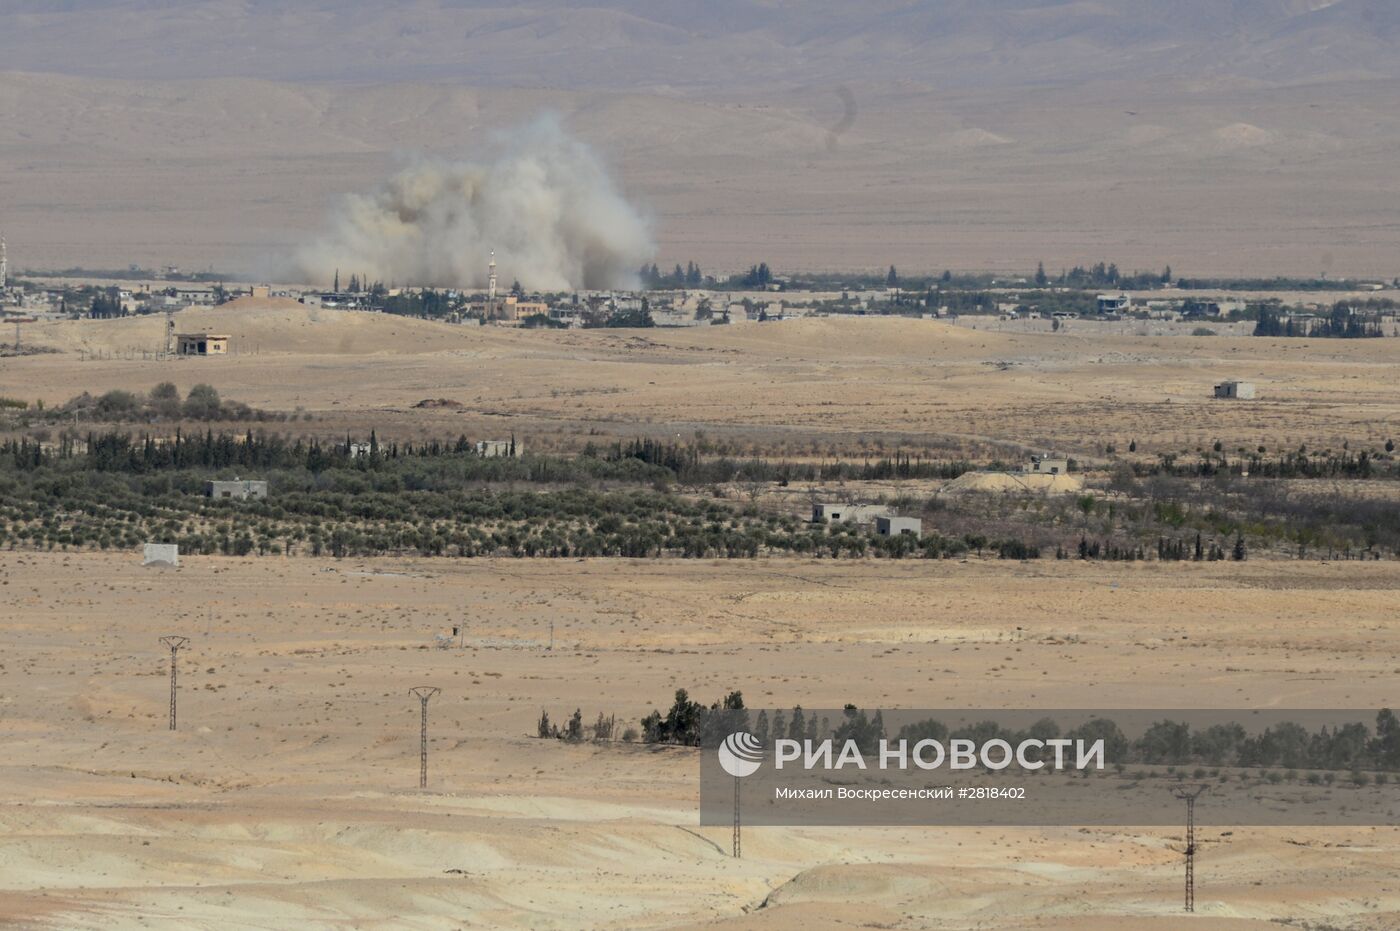 Бойцы сирийской армии и ополчения на подступах к городу Эль-Карьятейн в Сирии